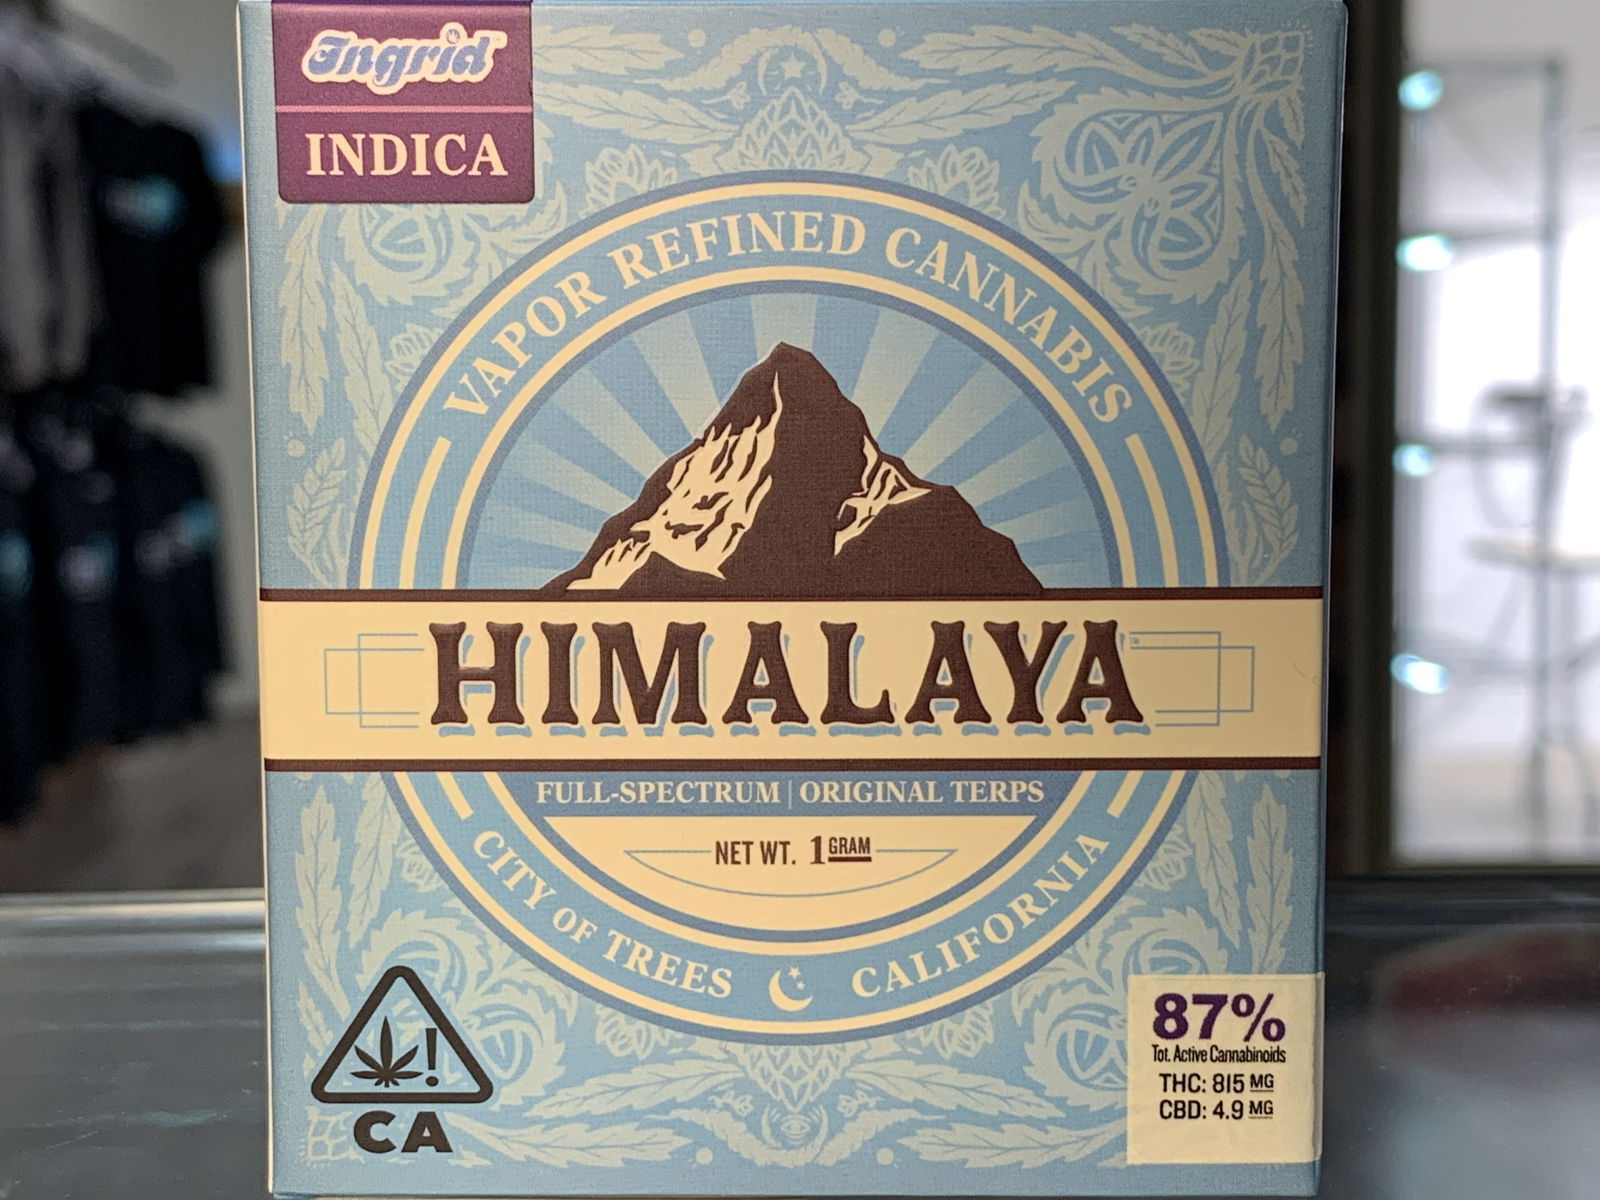 Himalaya Ingrid 1 gram cartridge